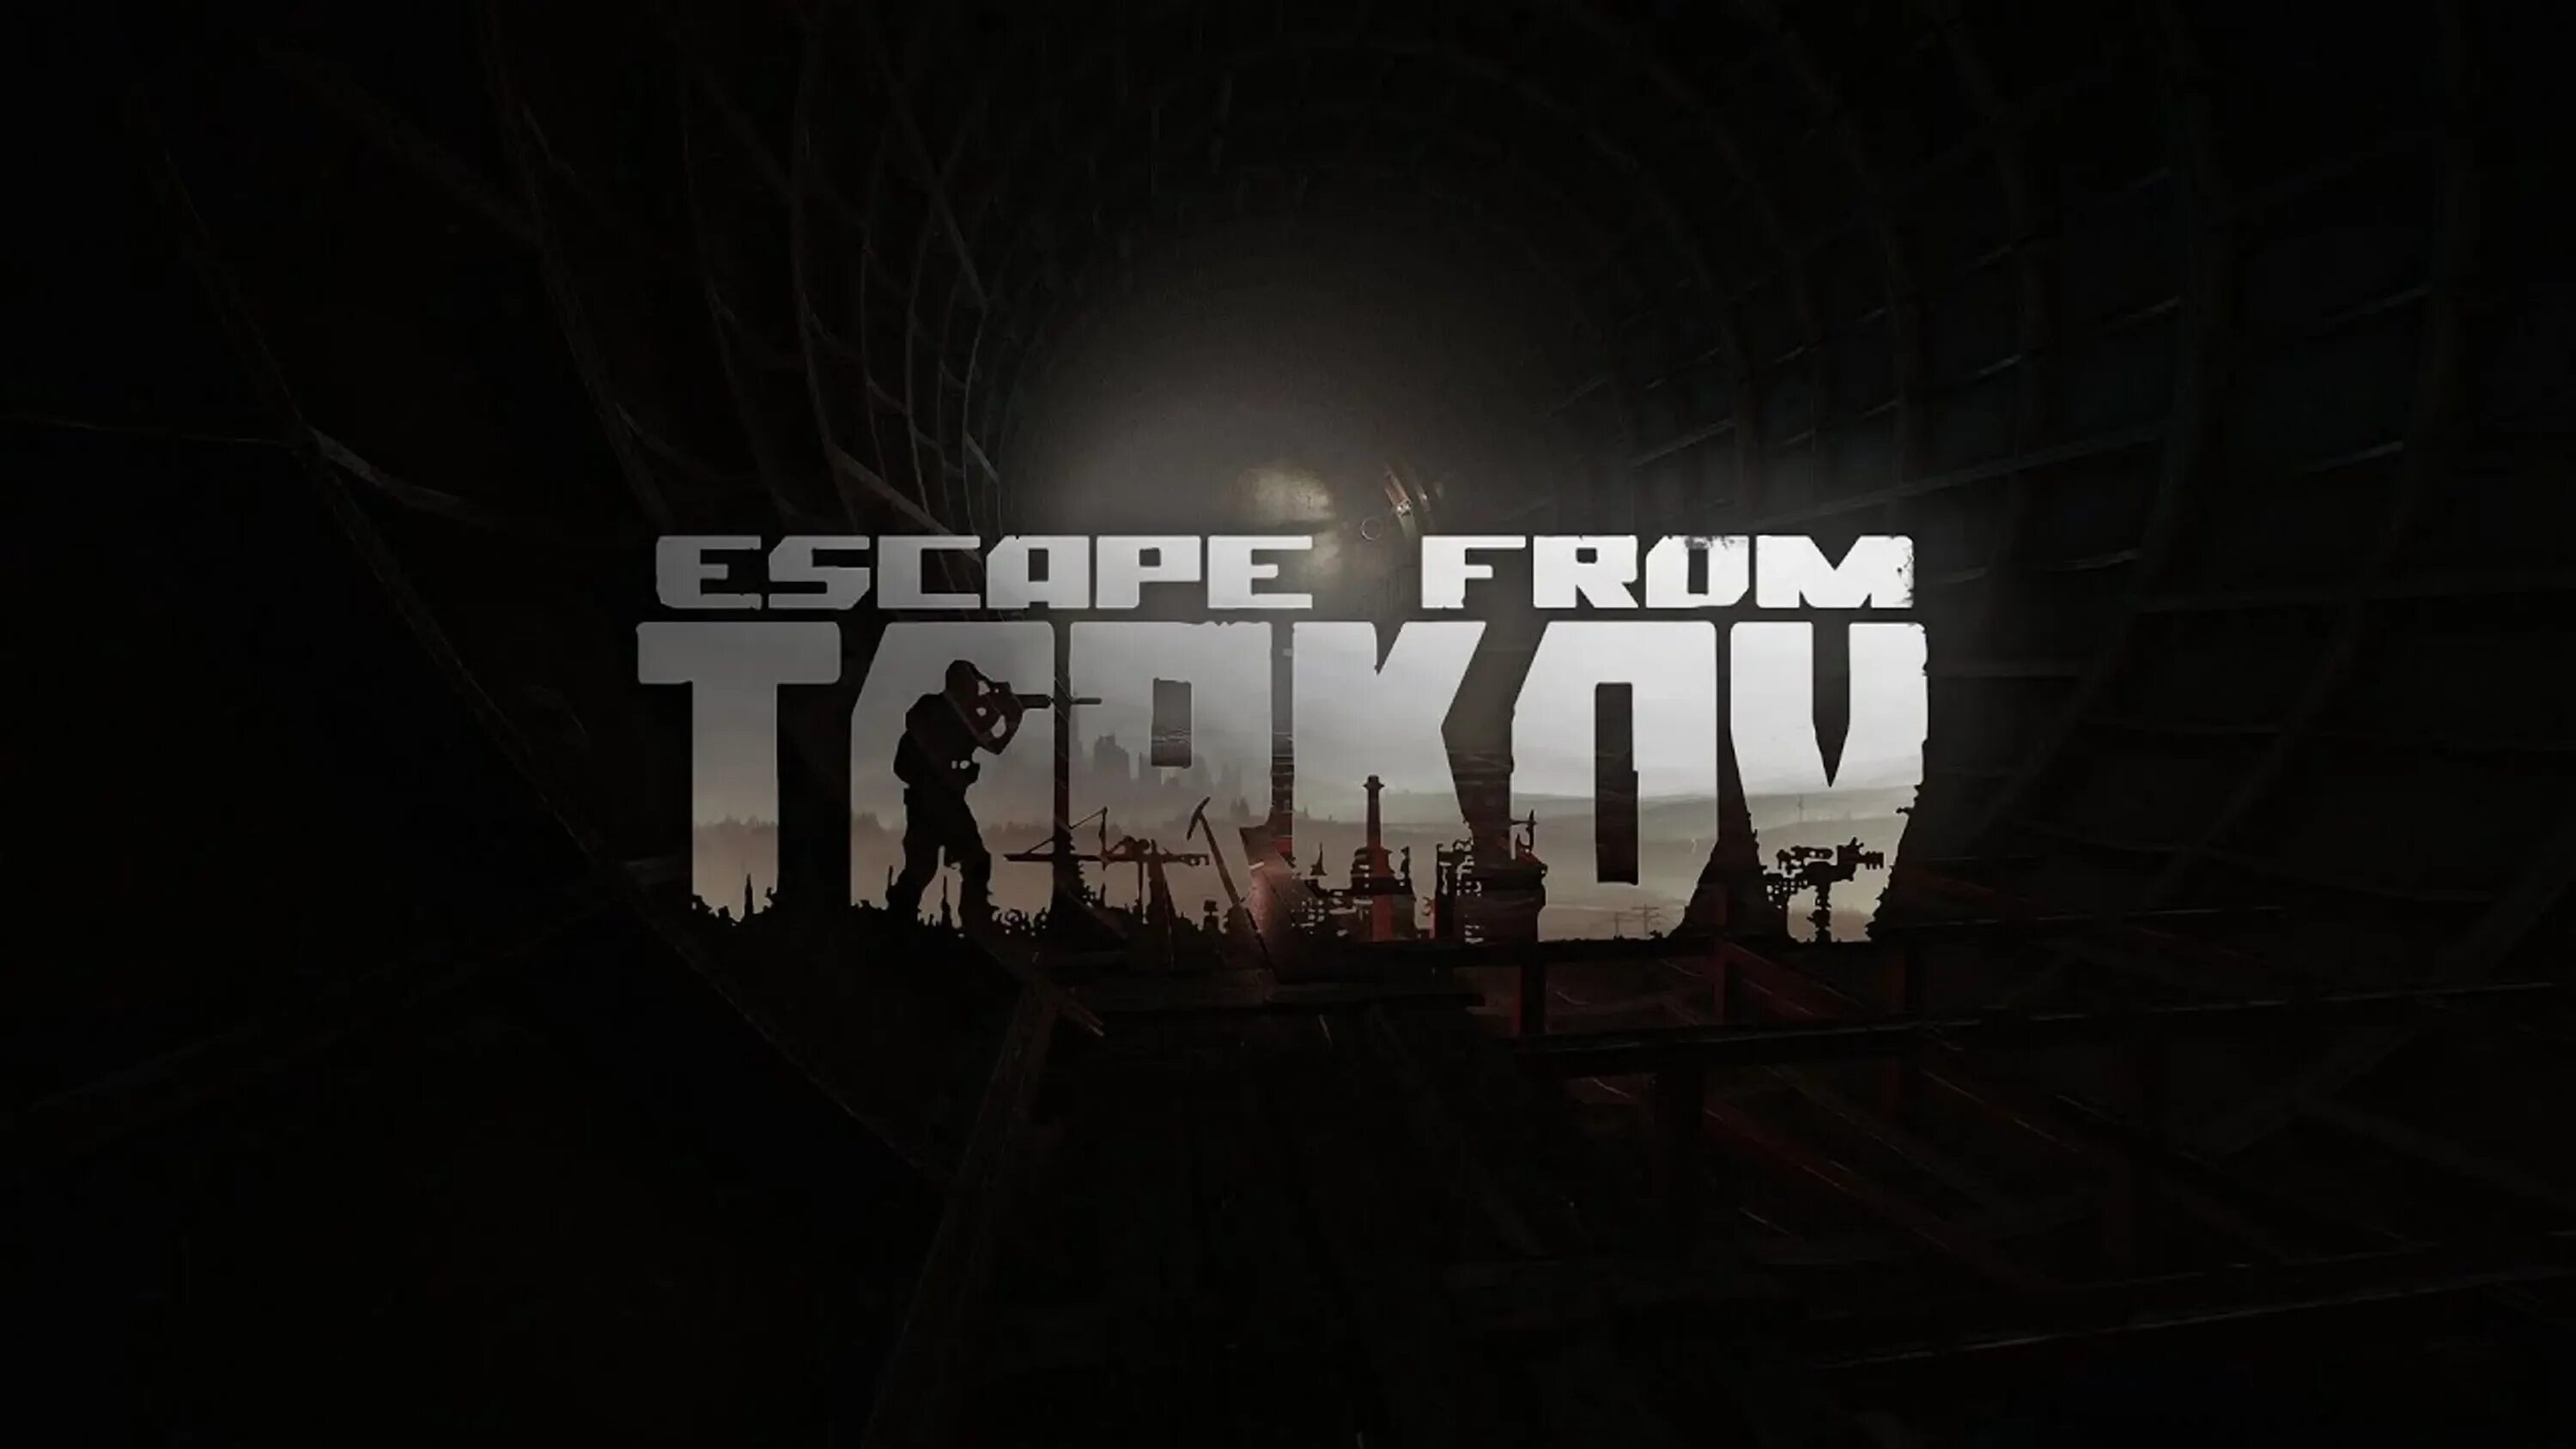 Escape from tarkov приватный. Побег из Таркова игра. Тарков игра лого. Escape from Tarkov логотип. Тарков обложка игры.